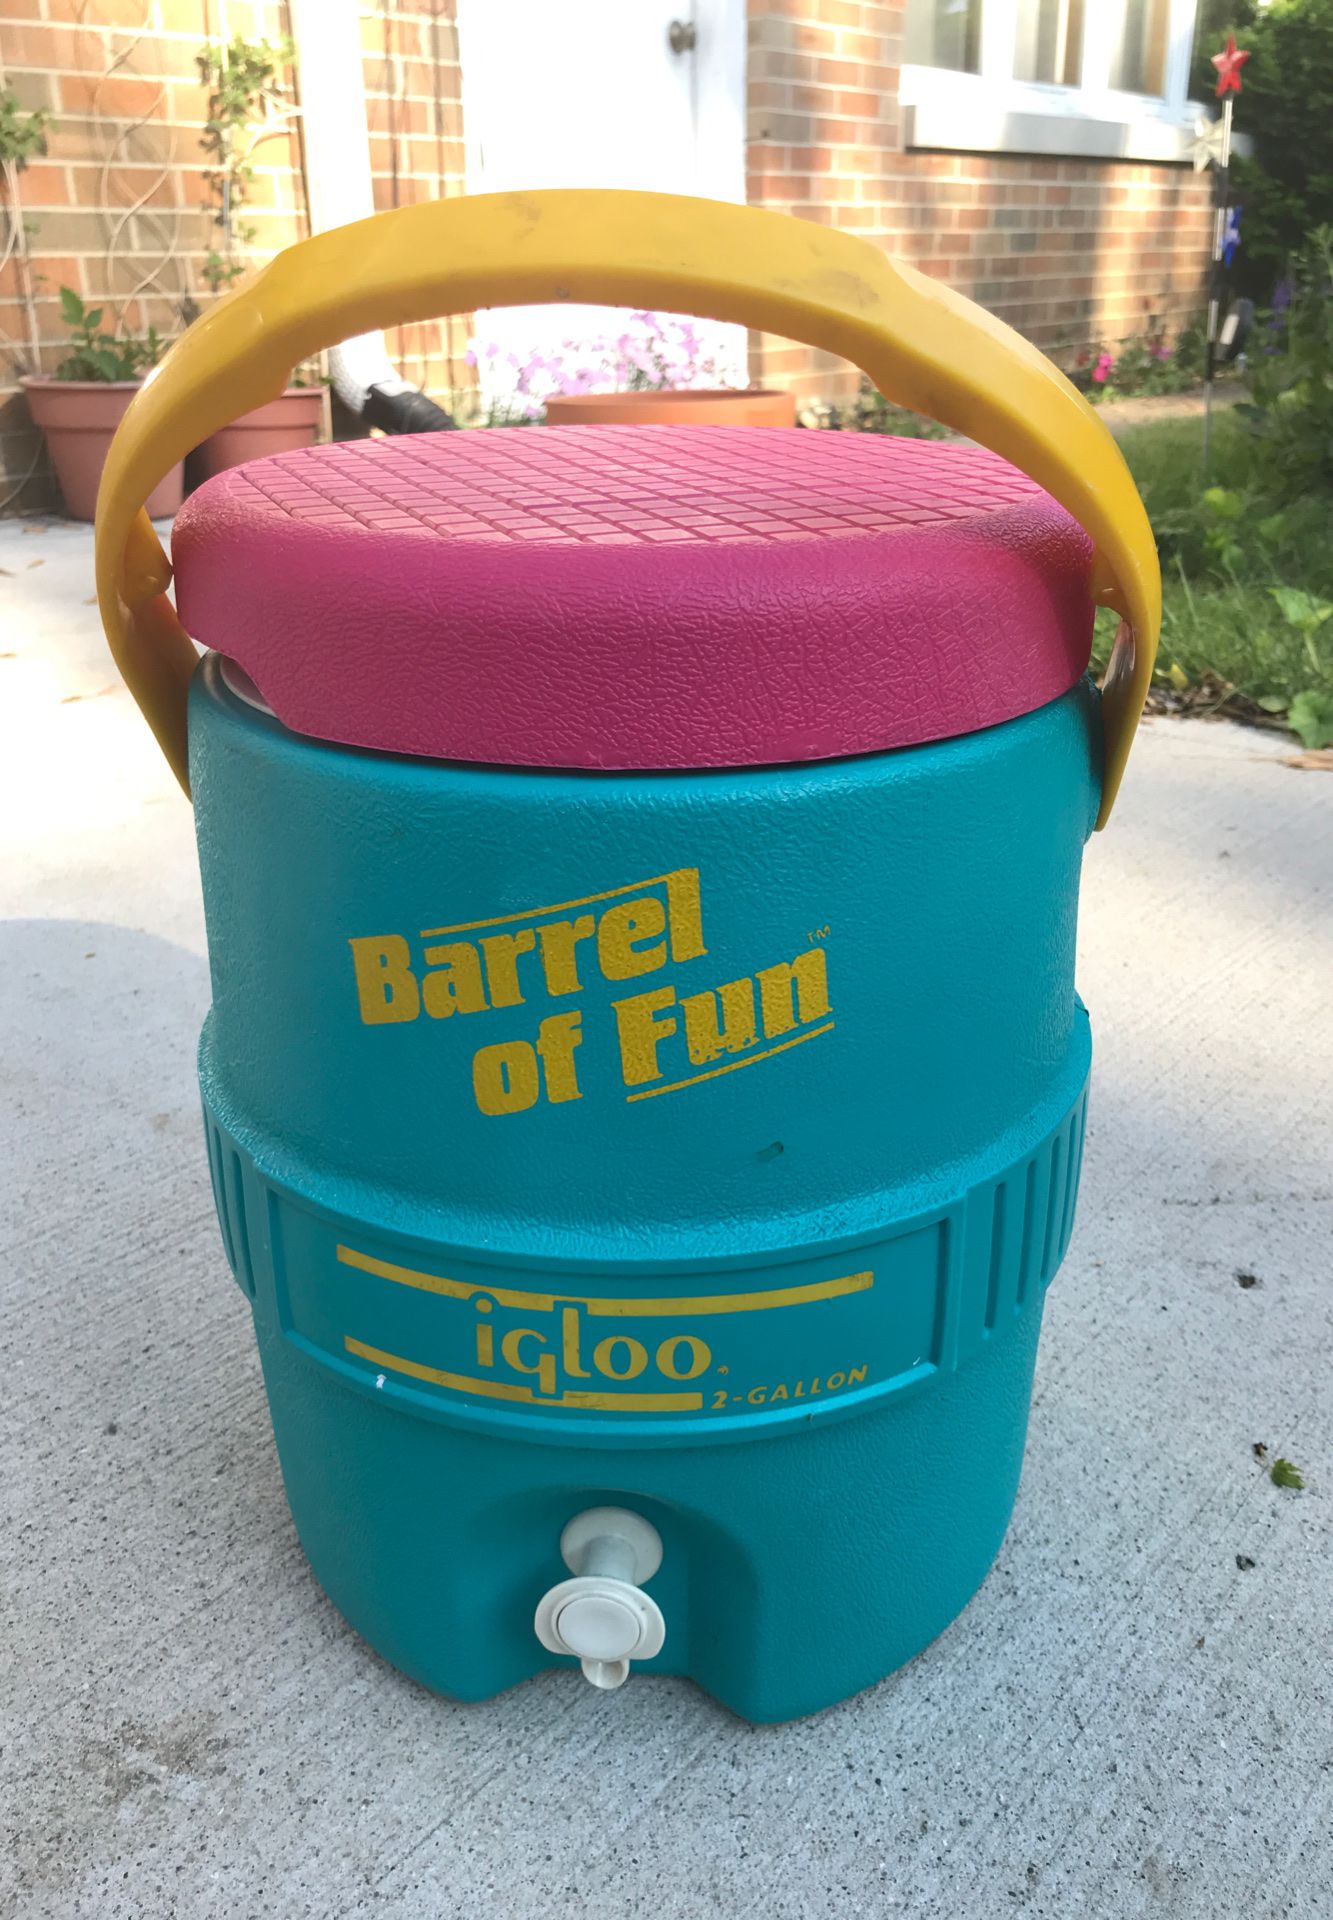 Retro Barrel of Fun Igloo Cooler